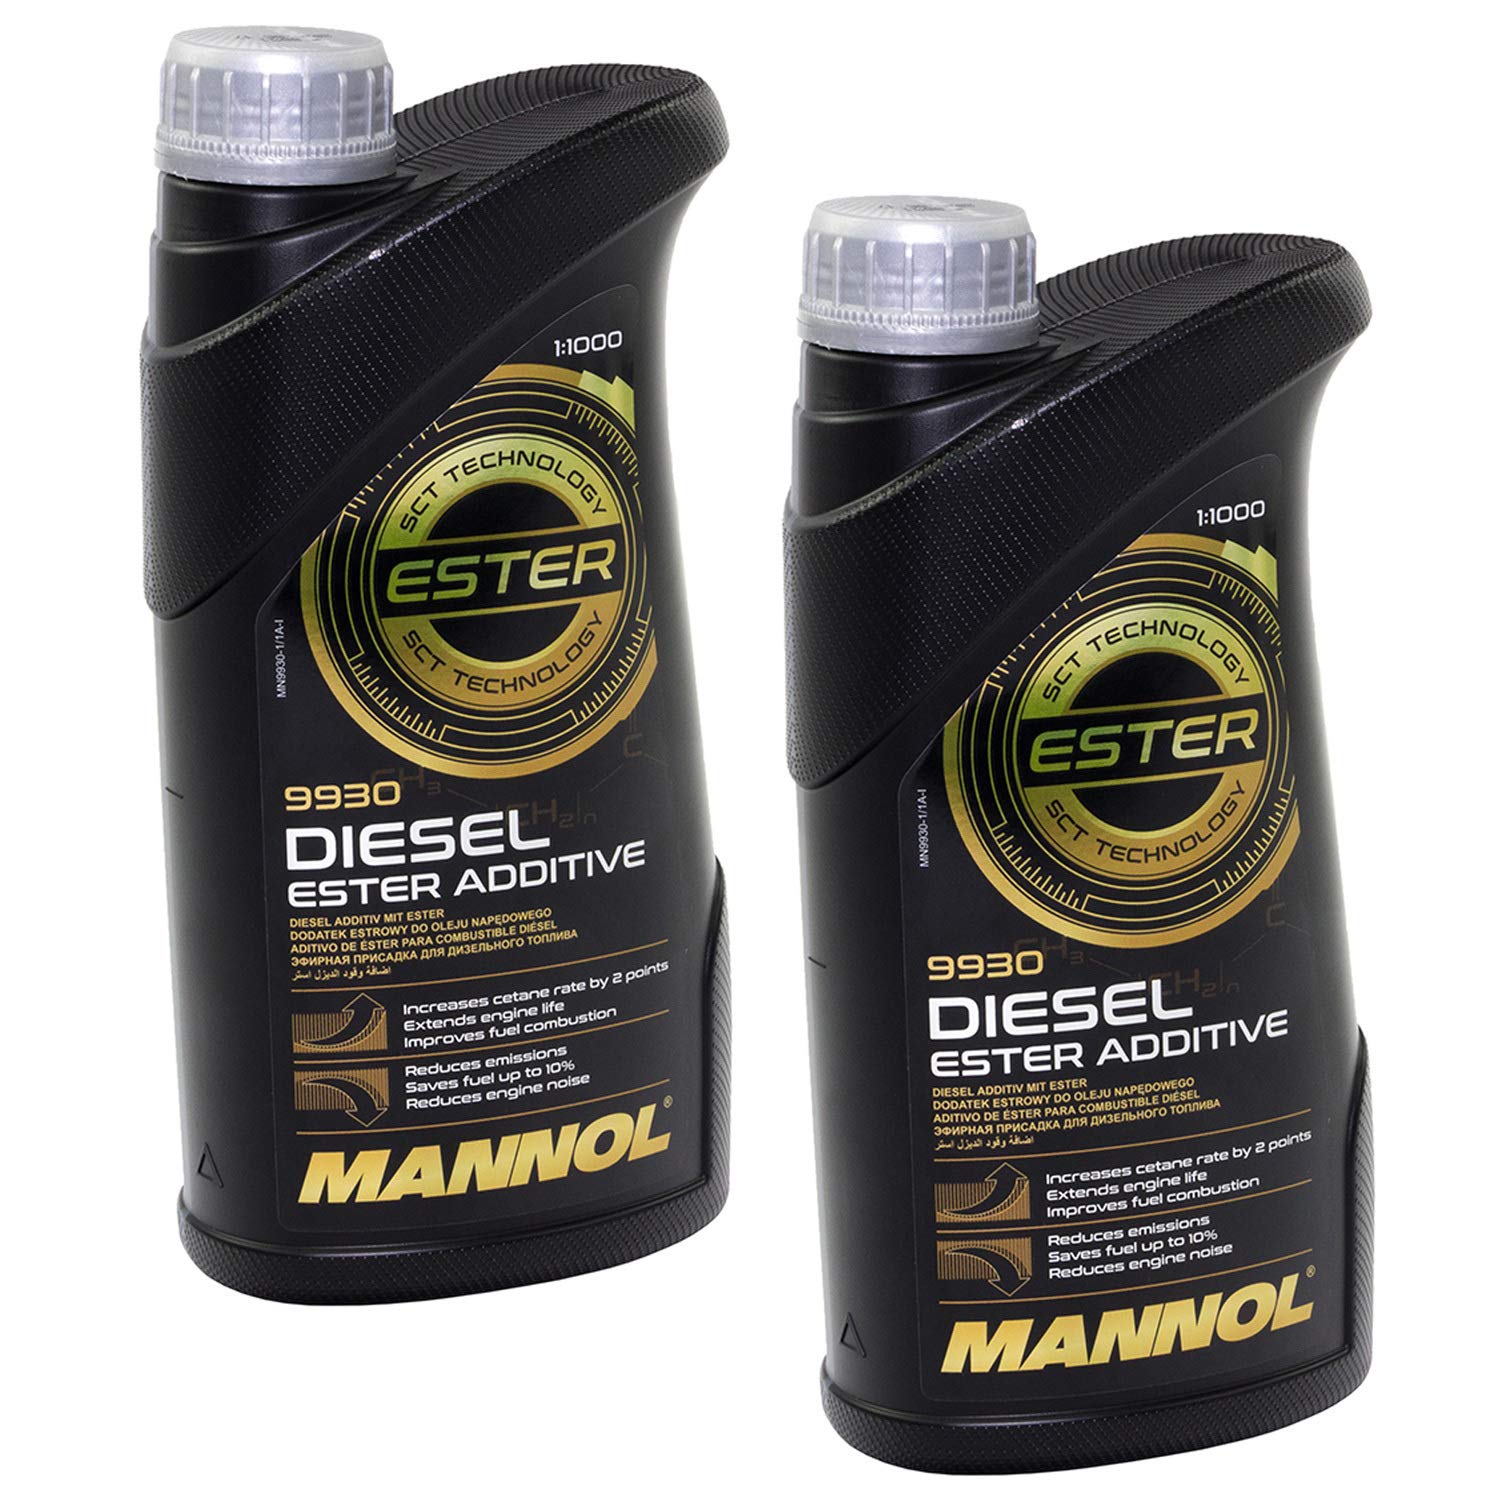 Diesel Ester Additive 9930 MANNOL 2 Liter Verschleißschutz Reiniger von MVH Bockauf